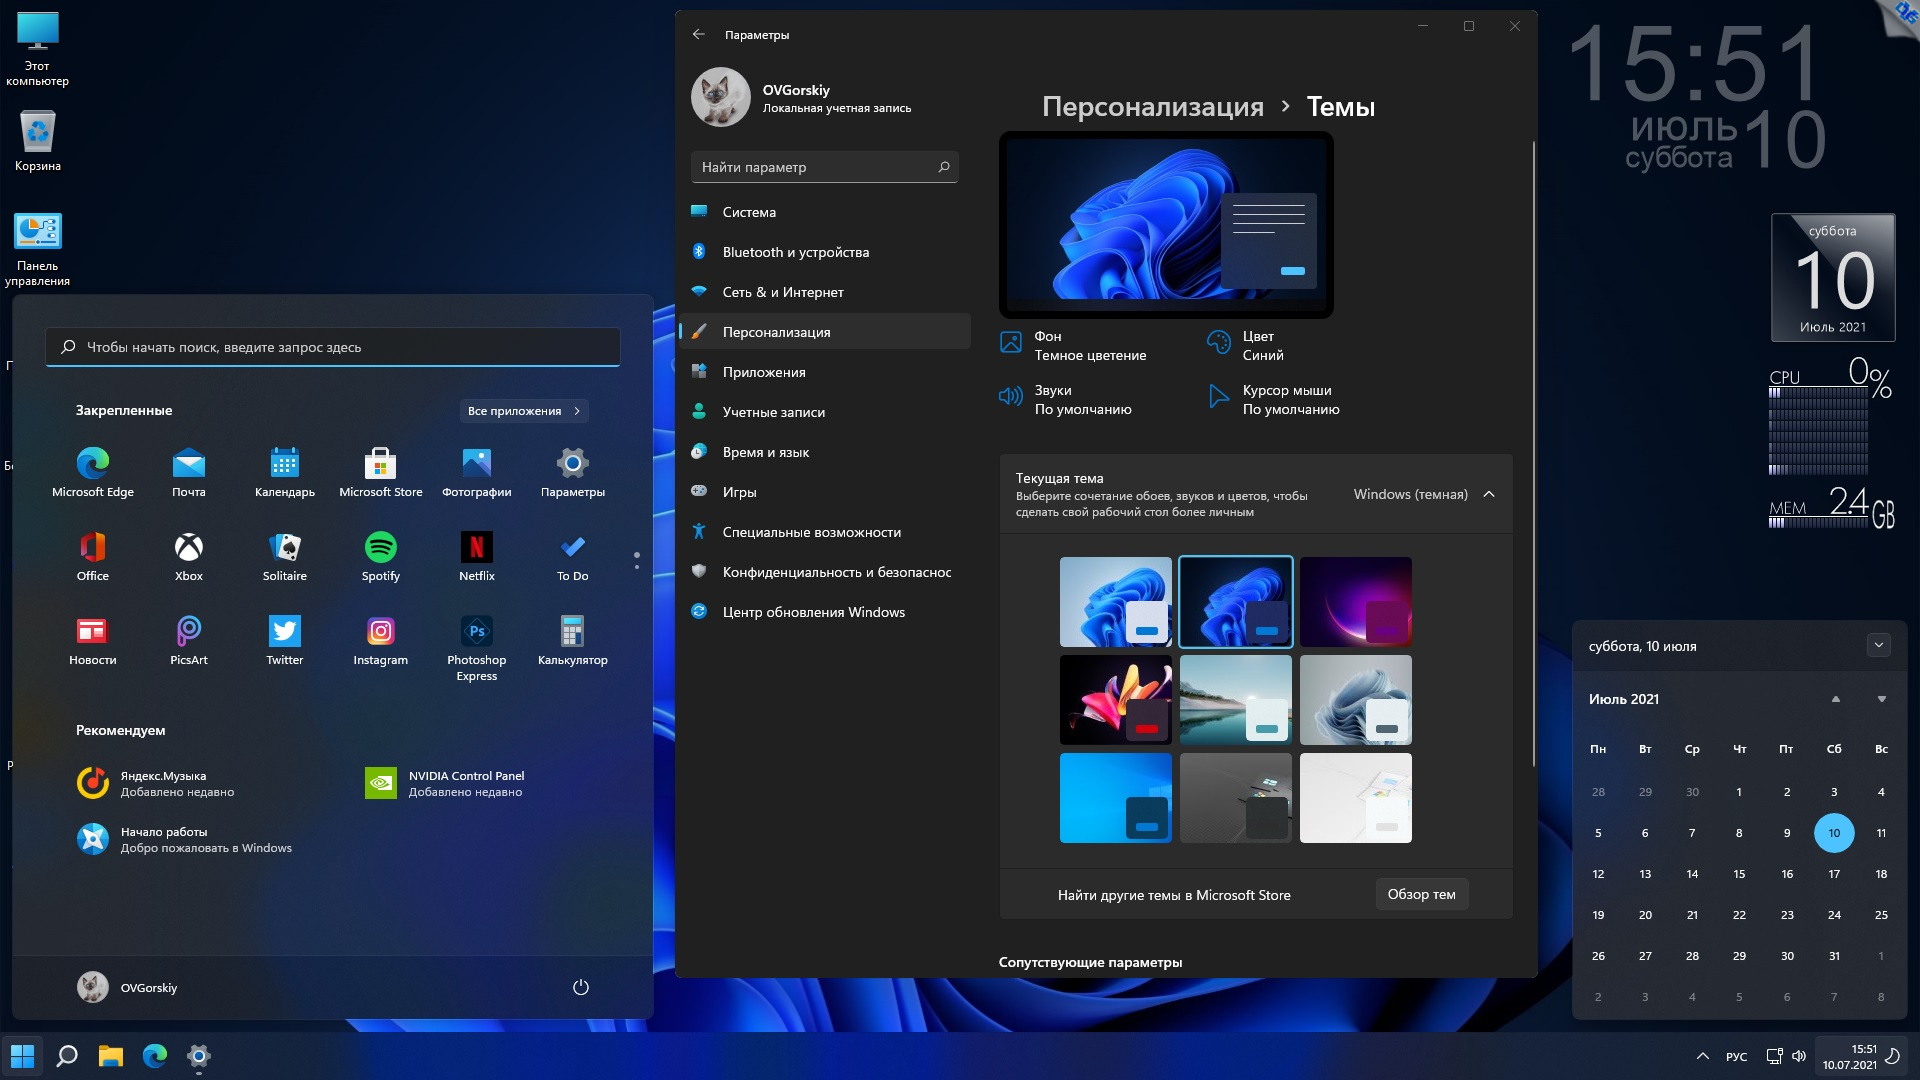 Windows 11 Pro 10.0.22000.100 co_Release DREY by Lopatkin x64 2021 Rus